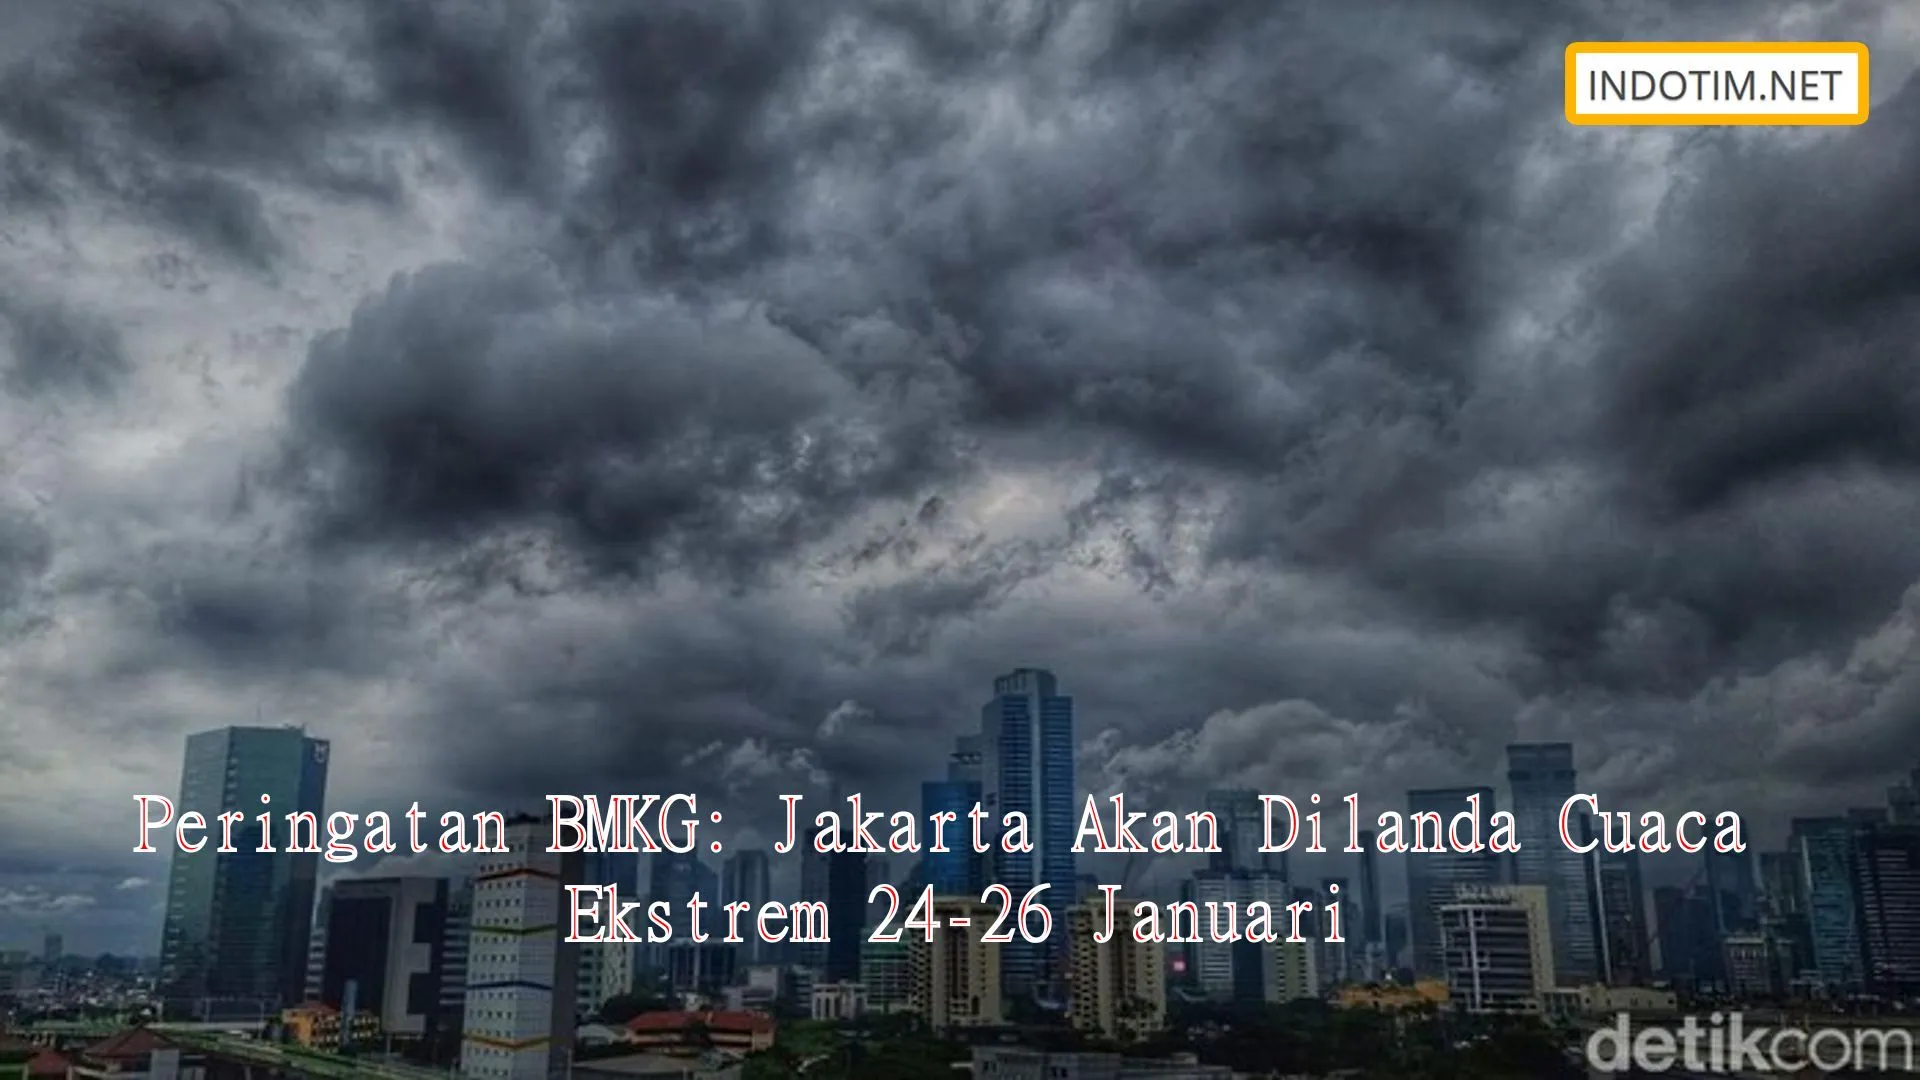 Peringatan BMKG: Jakarta Akan Dilanda Cuaca Ekstrem 24-26 Januari